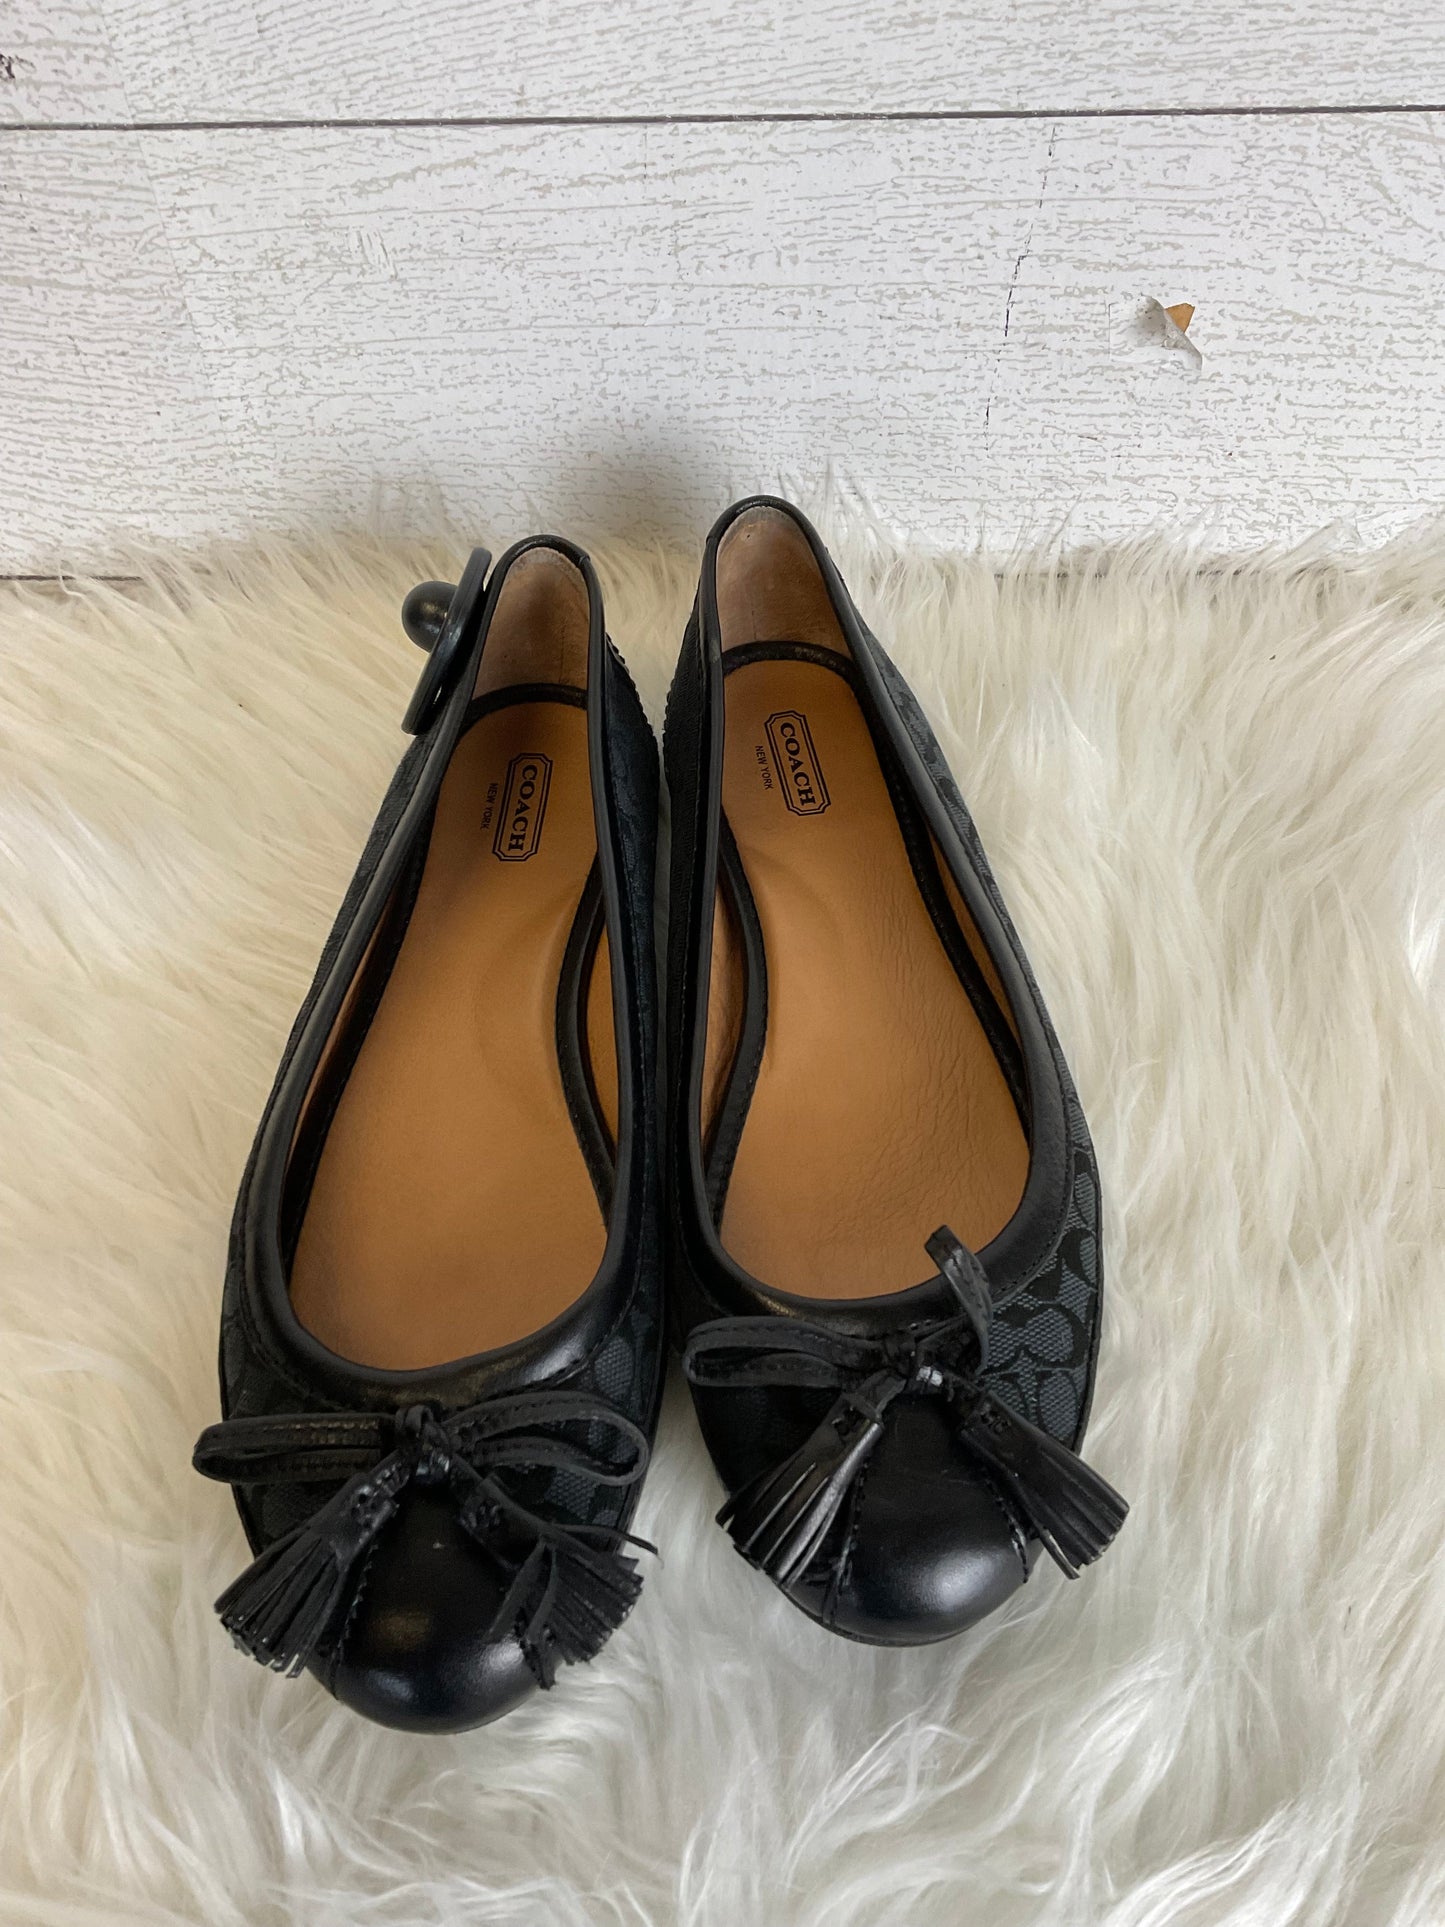 Black Shoes Designer Coach, Size 8